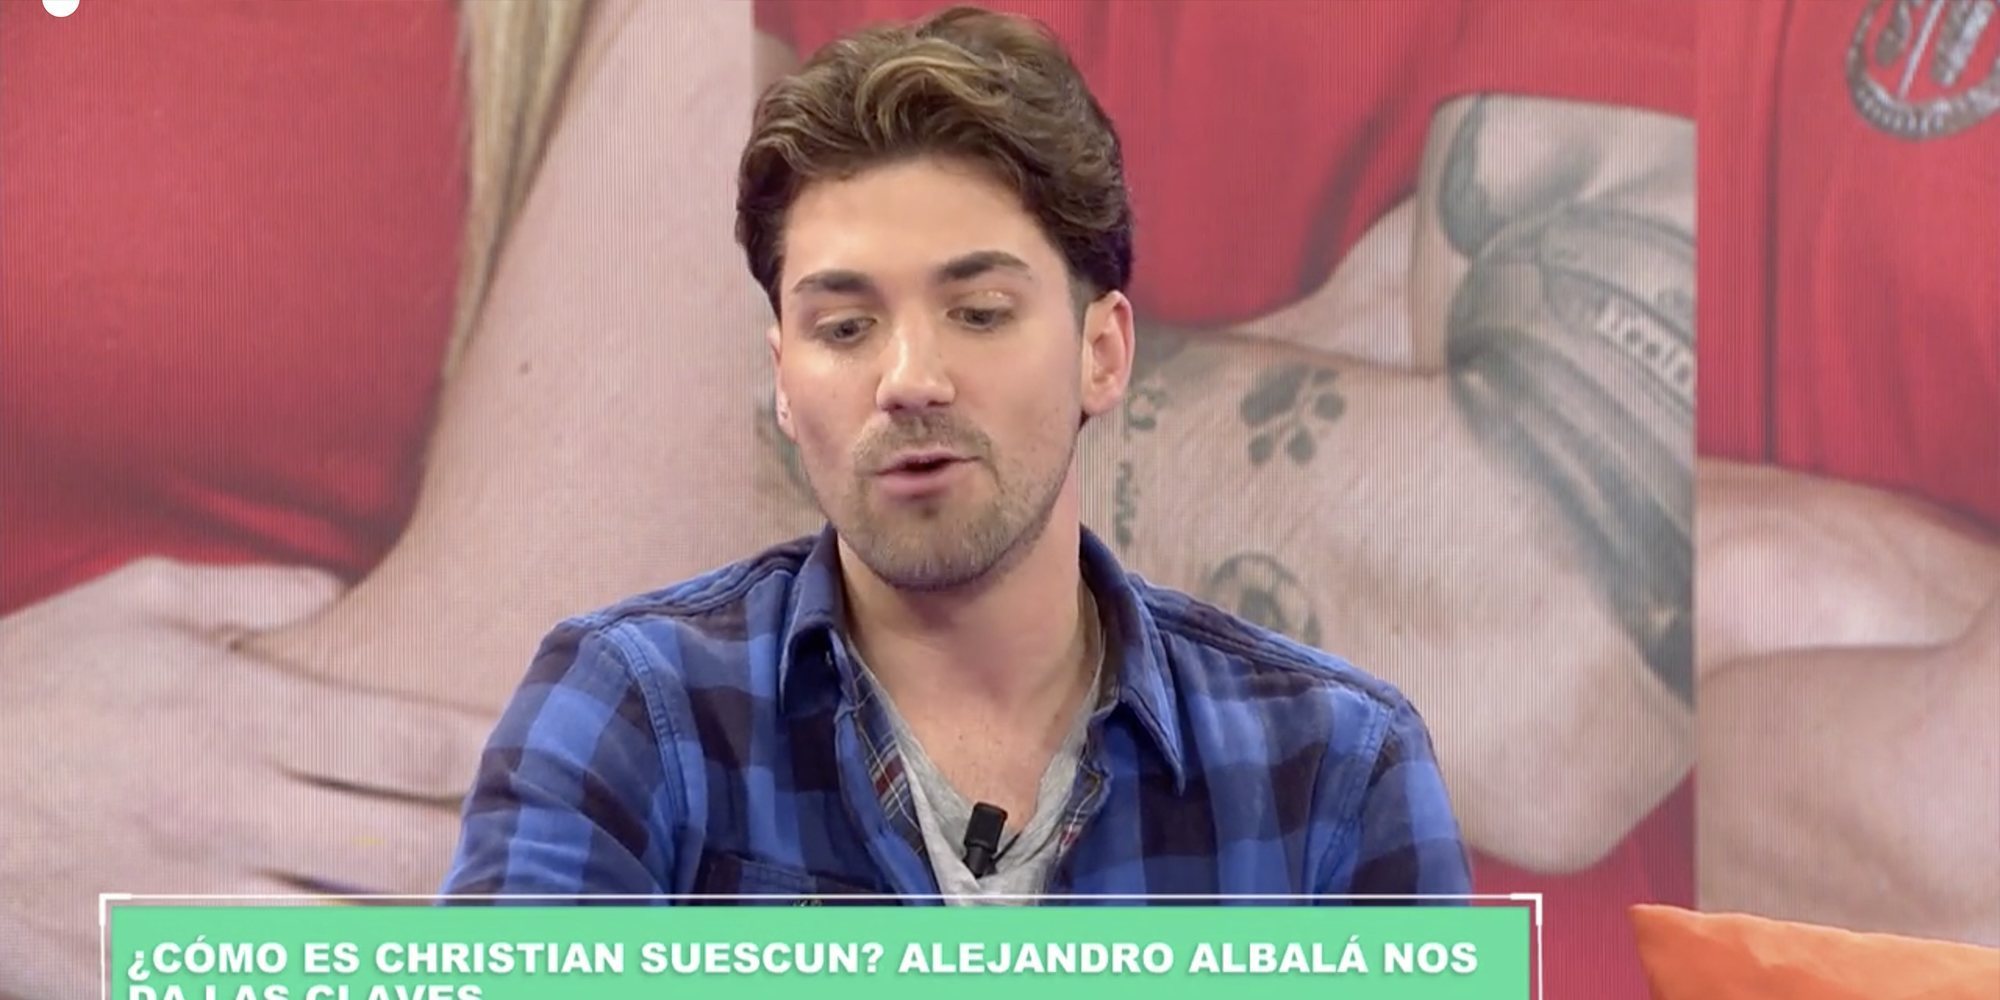 Alejandro Albalá arremete contra Cristian Suescun: "La última vez que me habló fue para amenazarme"